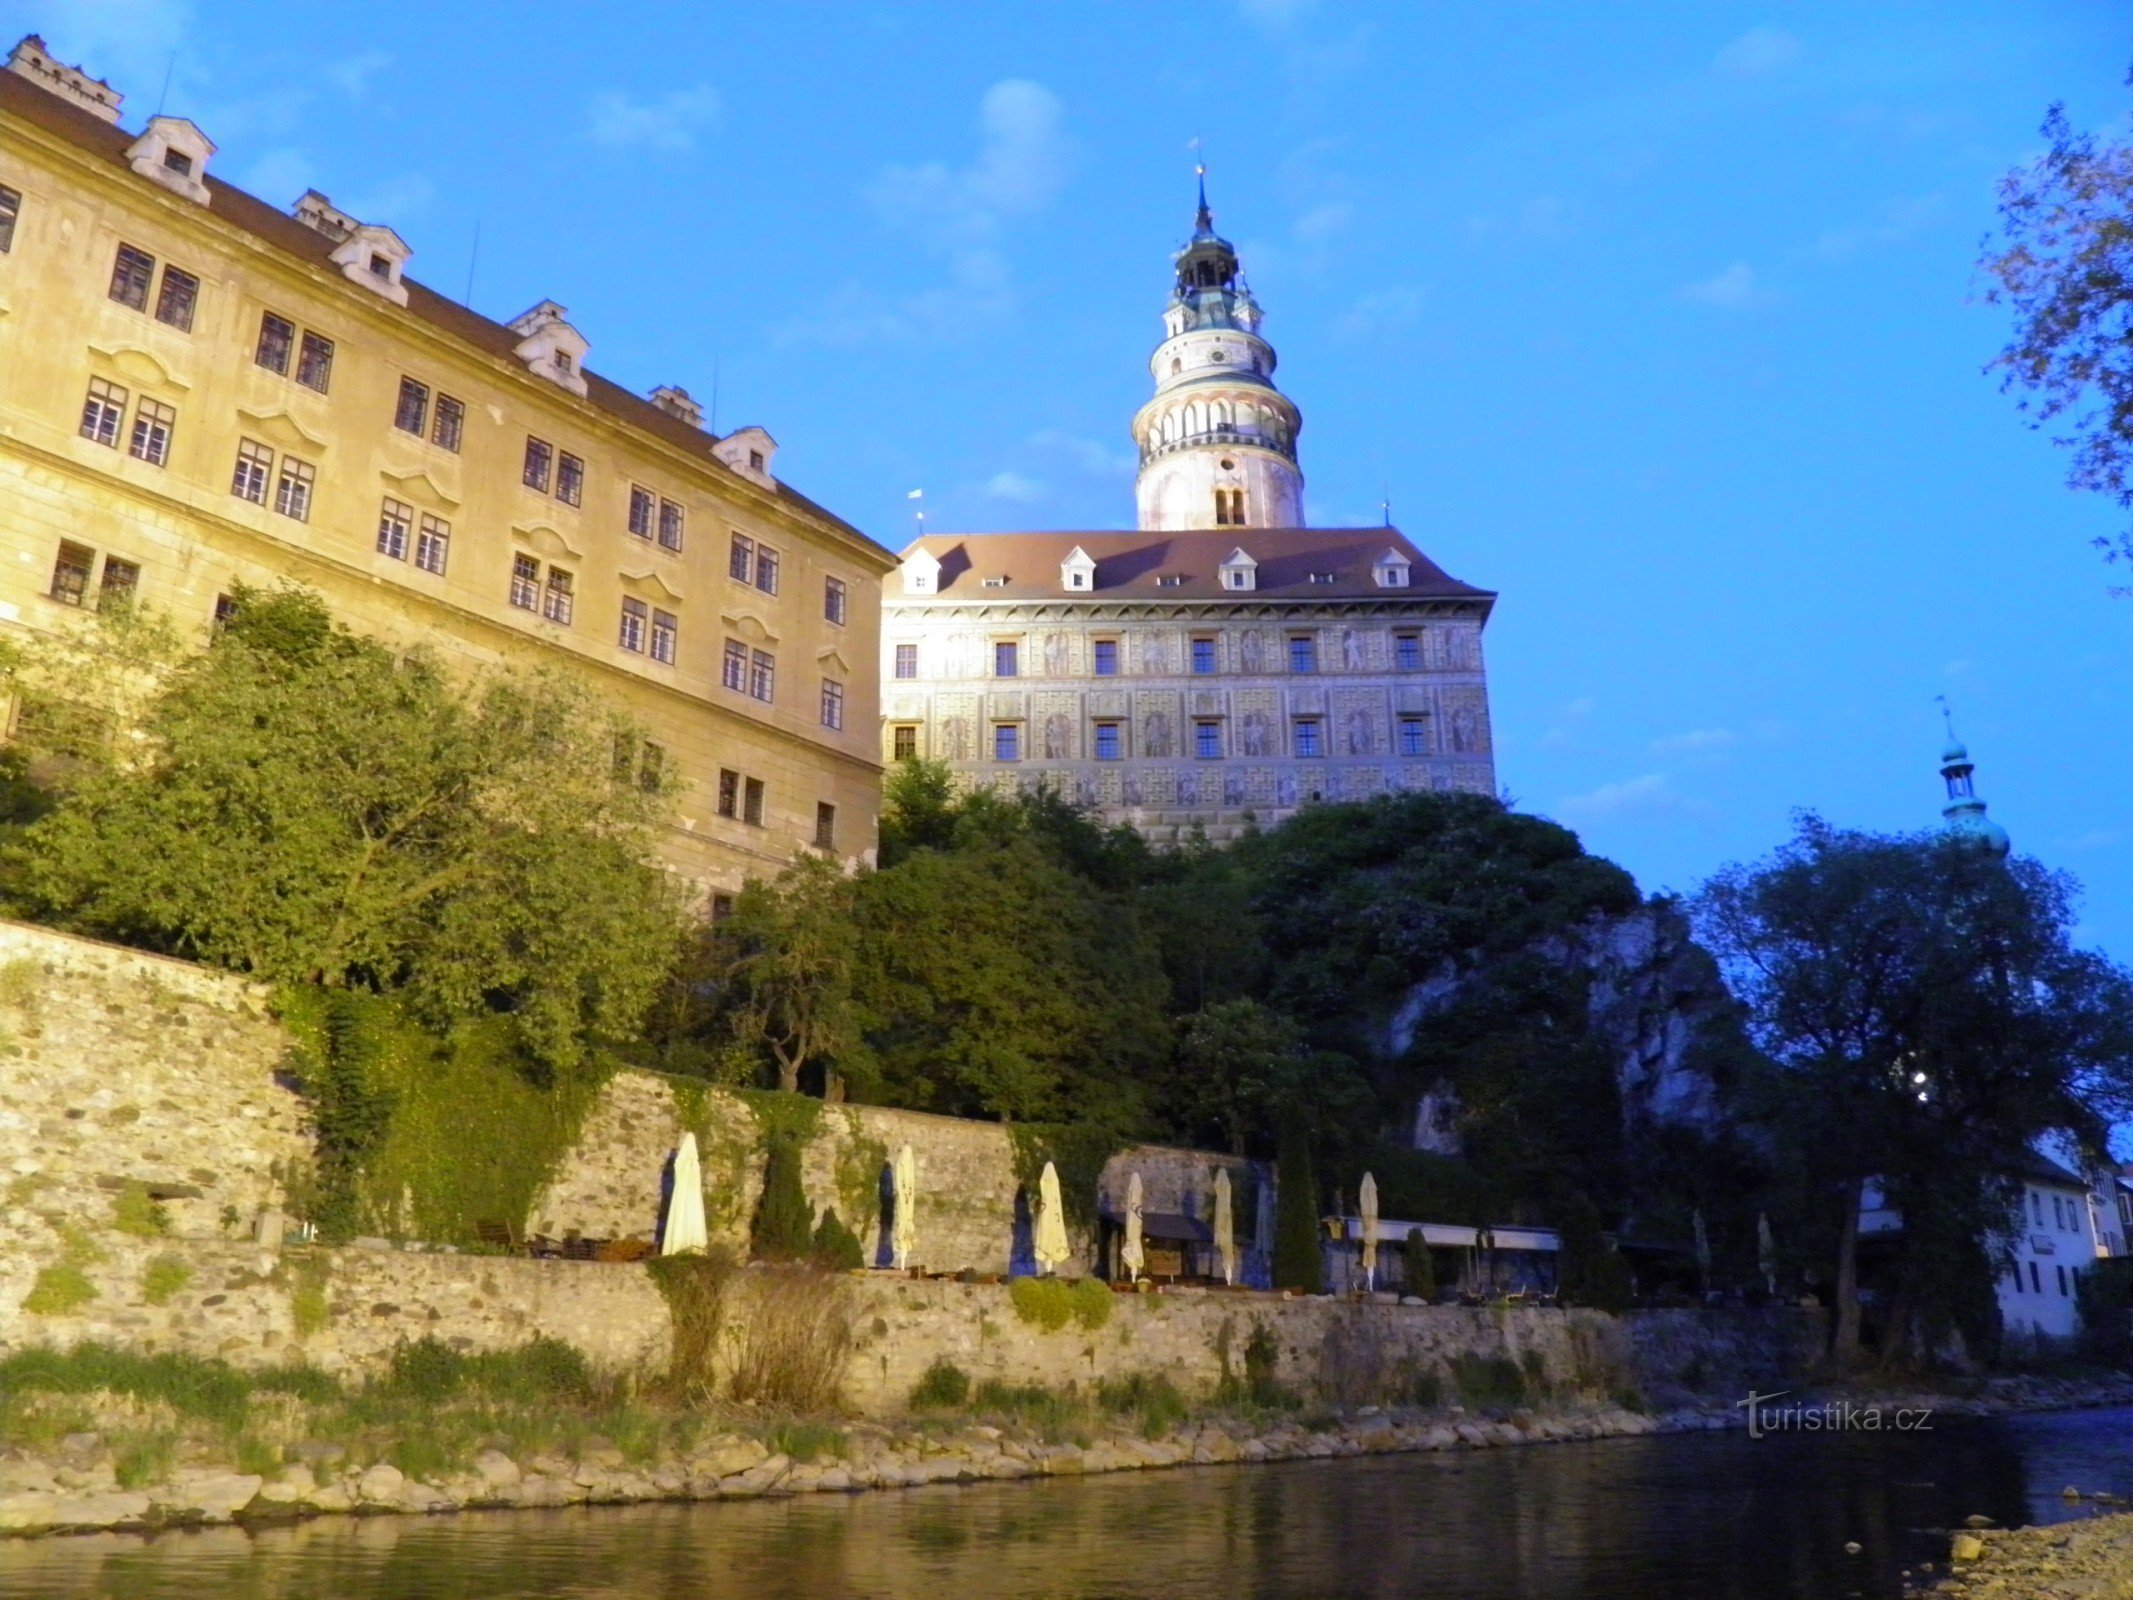 Grad in dvorec ob Vltavi.